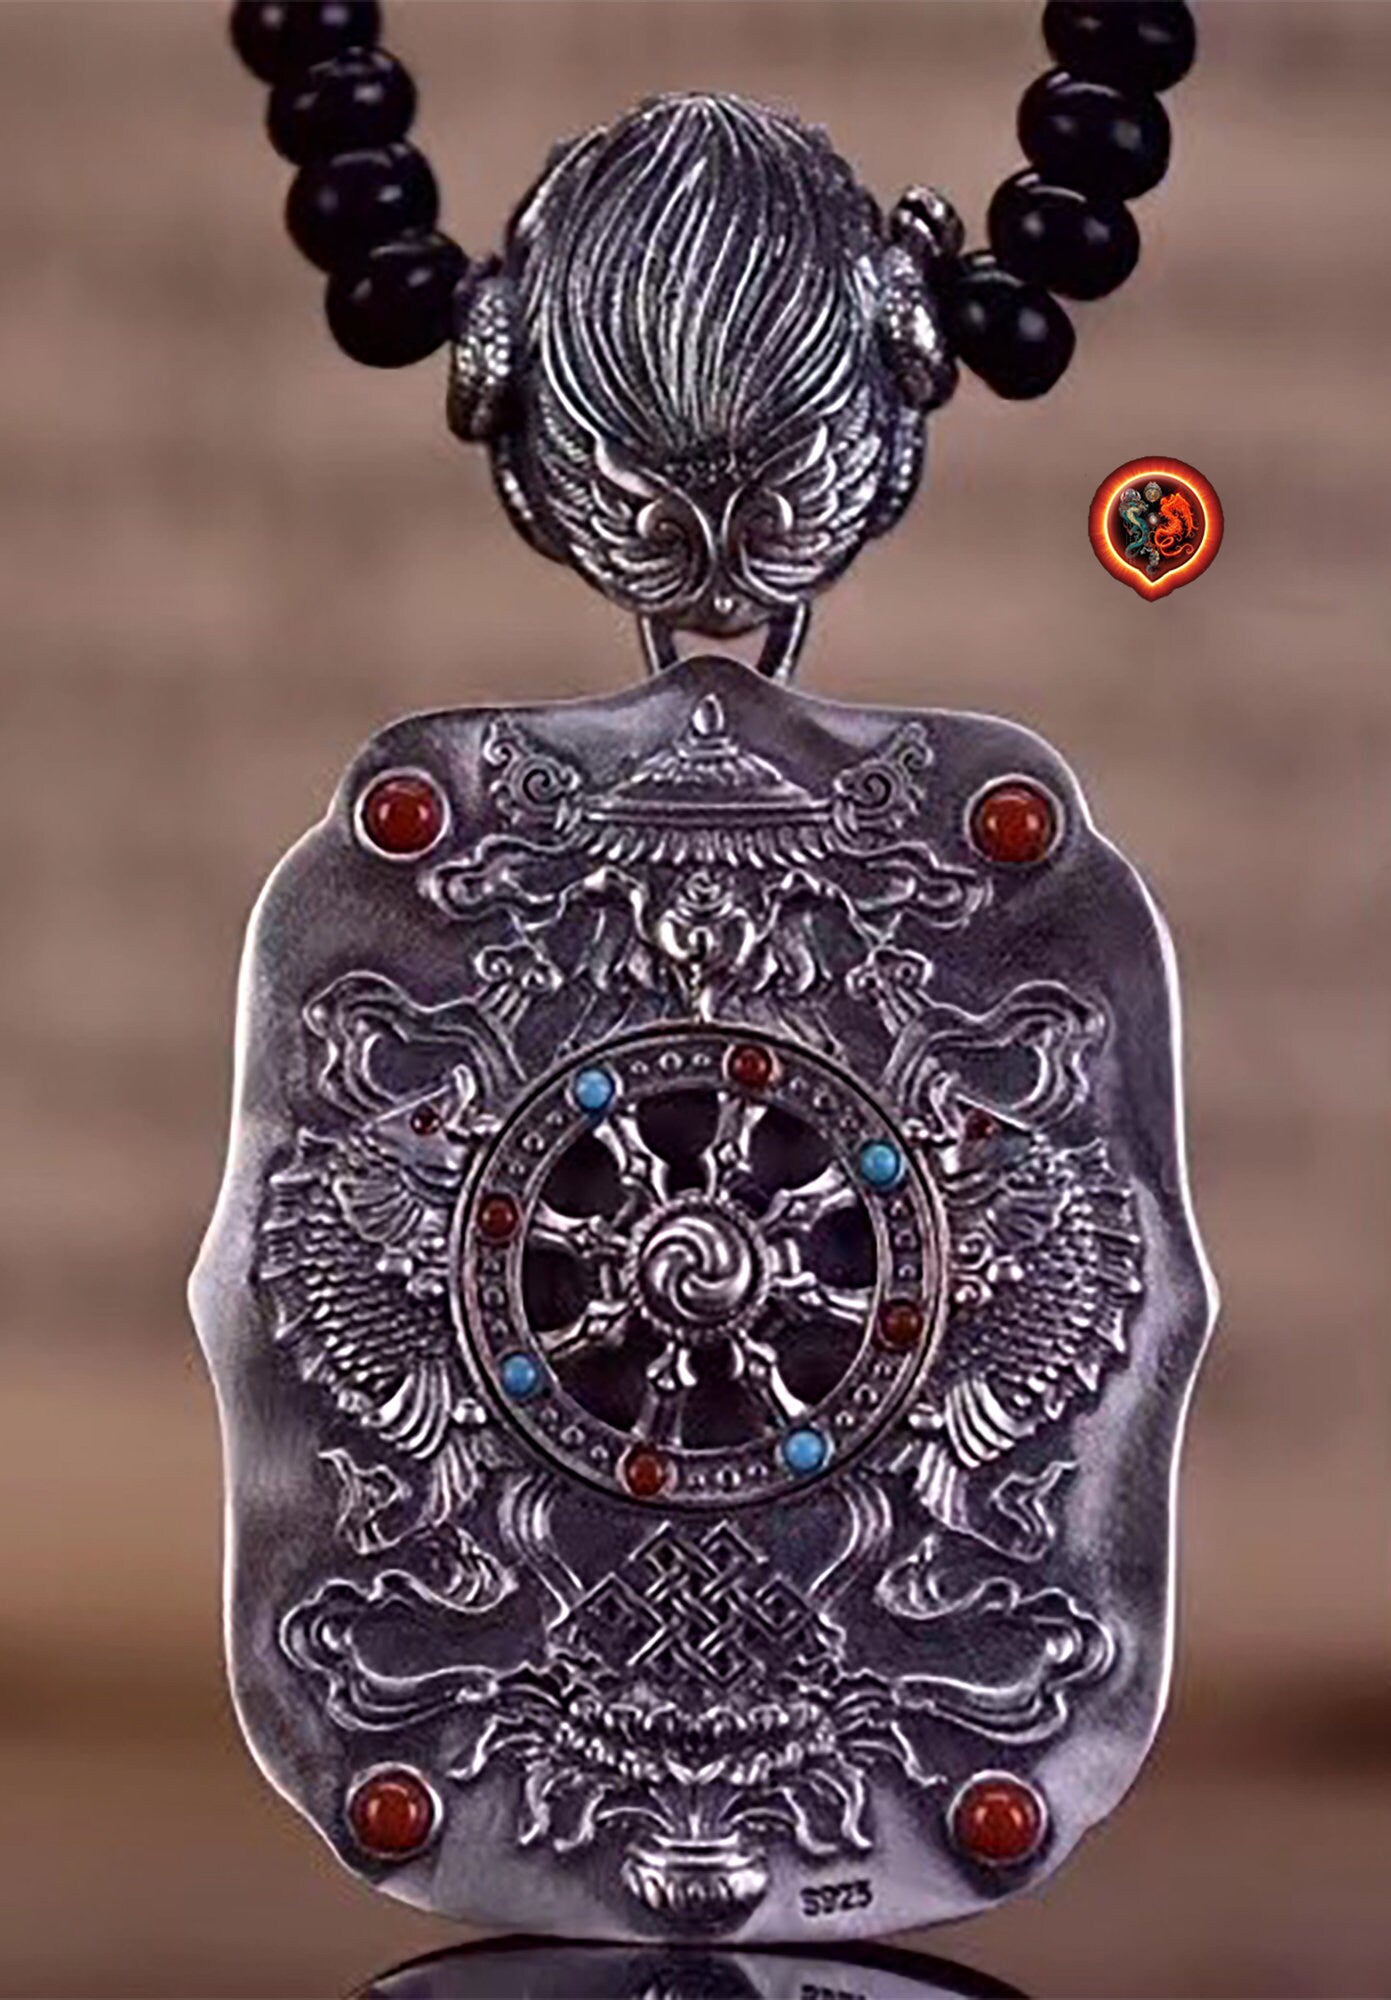 pendentif amulette de protection bouddhiste Bouddha Chenrezi mala de prière et méditation 108 perles, argent 925 or 18K bélière Garuda - obsidian dragon